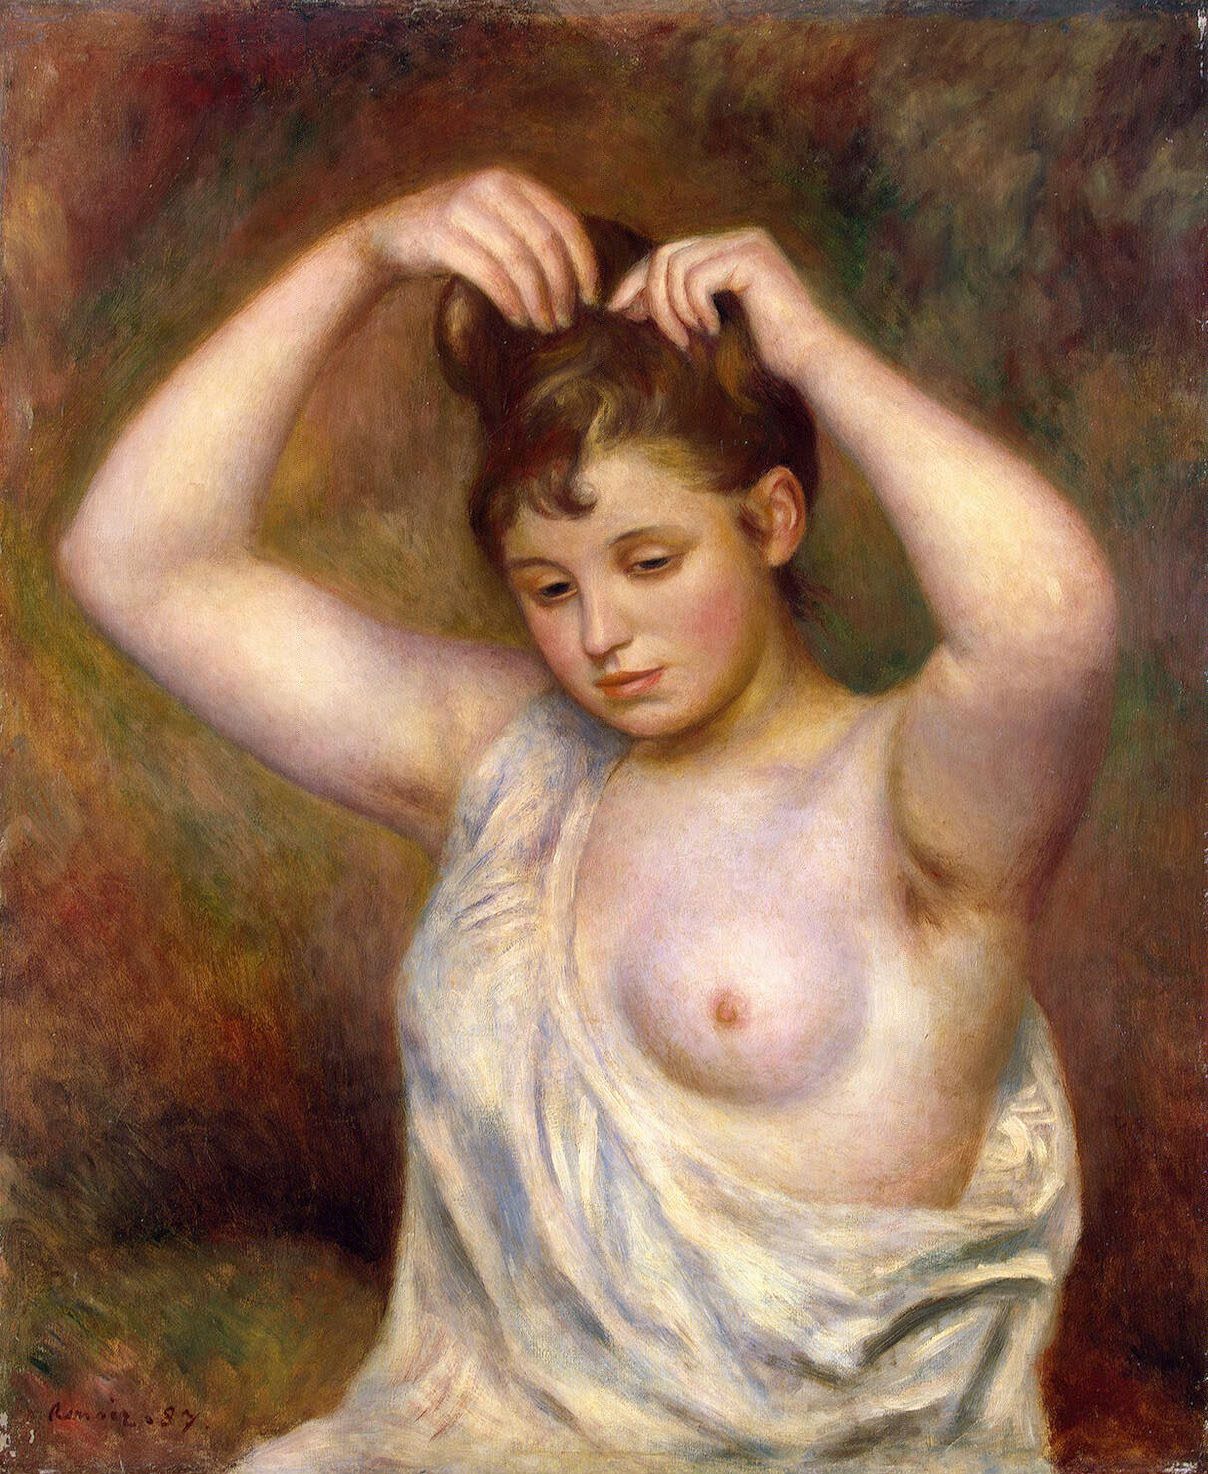 Ренуар. Причесывающаяся женщина. 1887